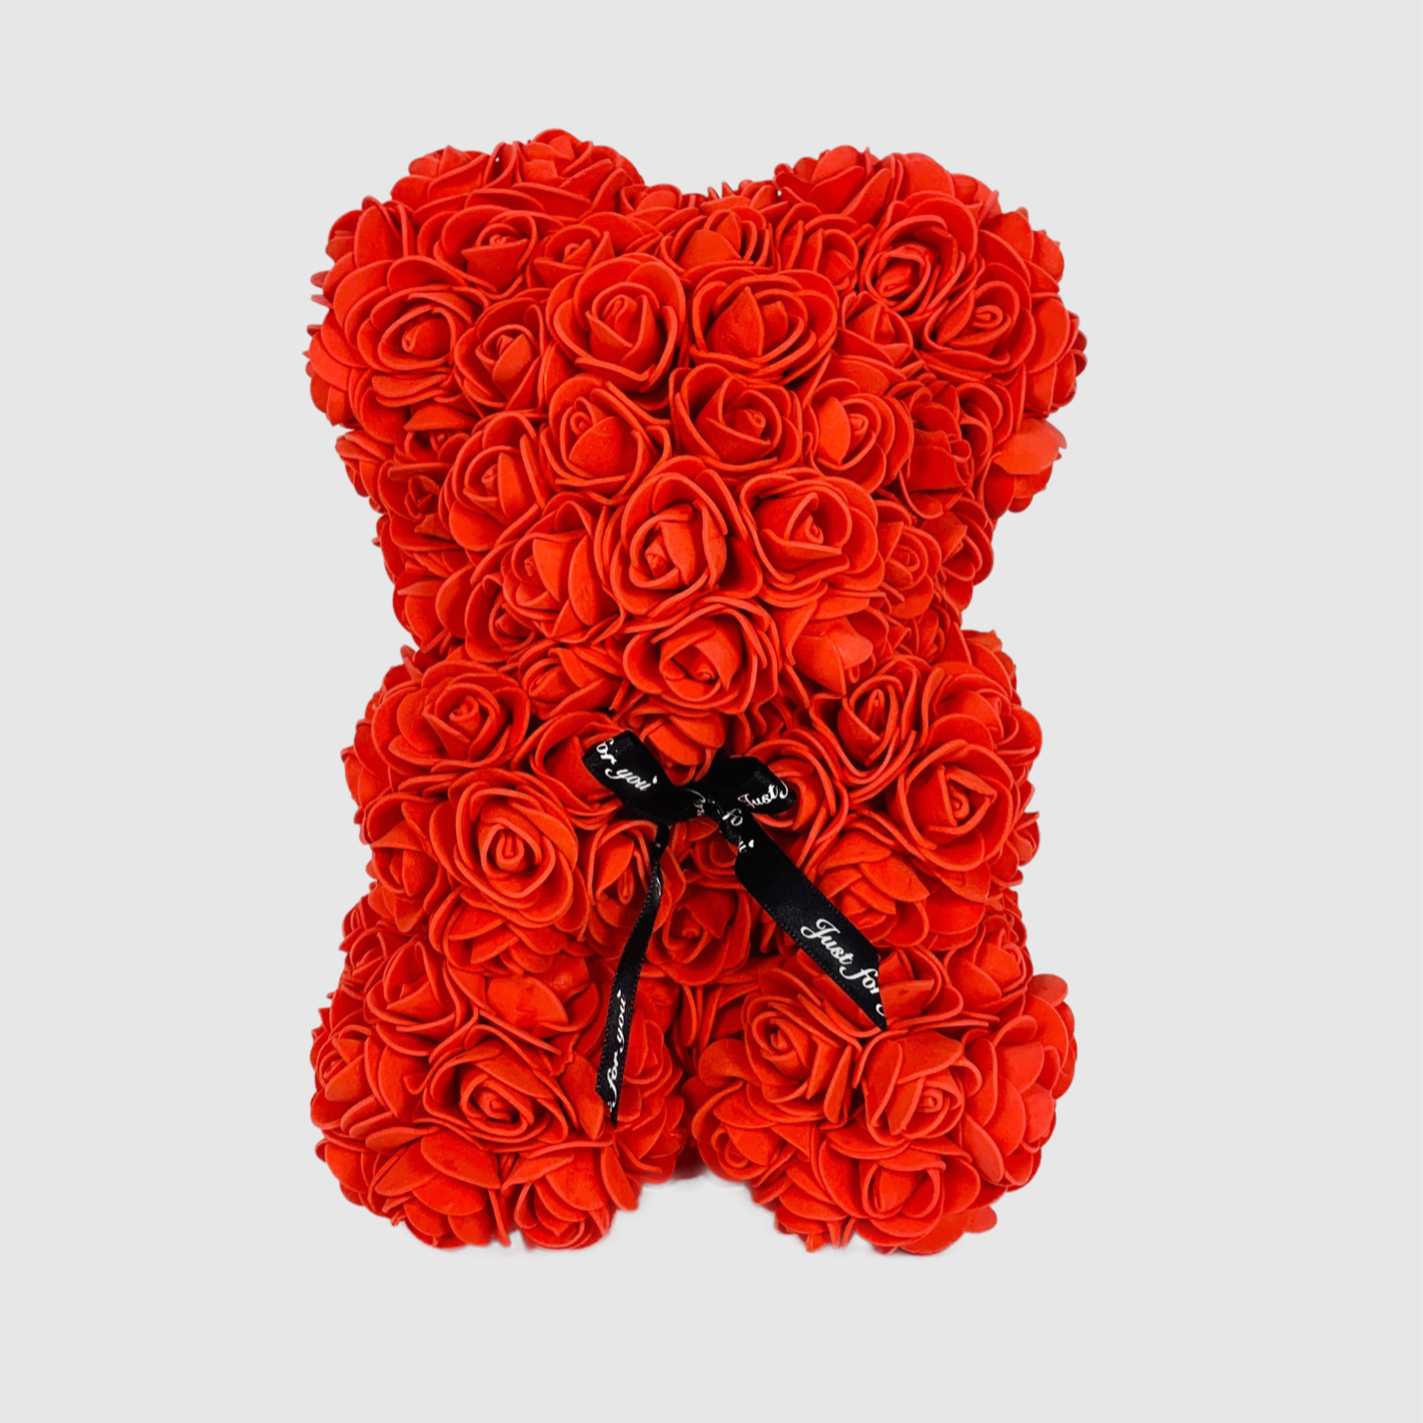 Teddy aus roten Infinityrosen mit schwarzer Schleife